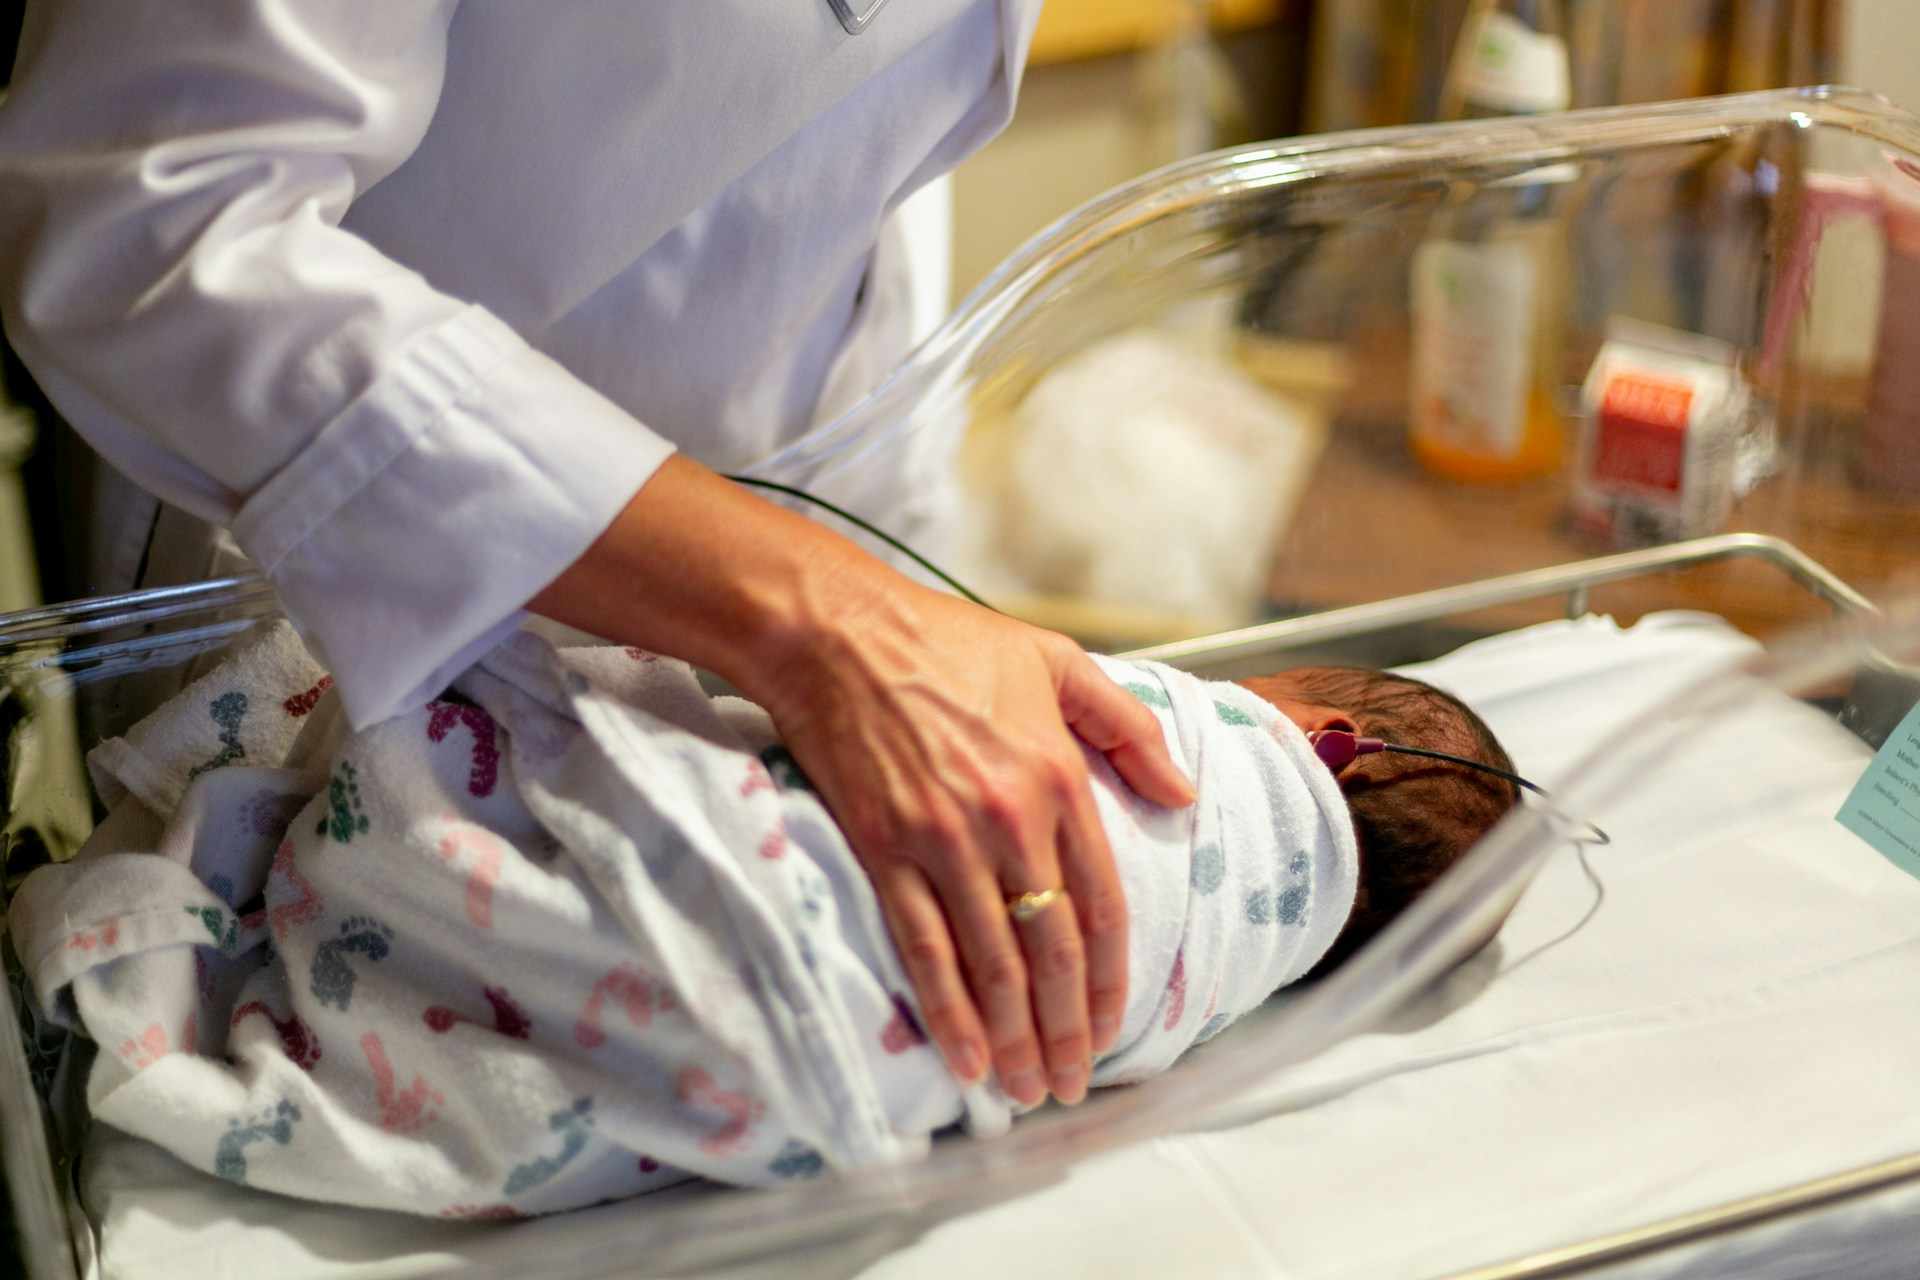 soins apportés à un nouveau né à l'hôpital avec une main secourable - Photo de Solen Feyissa sur https://unsplash.com/fr/photos/personne-en-costume-blanc-tenant-un-recipient-en-verre-transparent-uVd1Z6Go74M